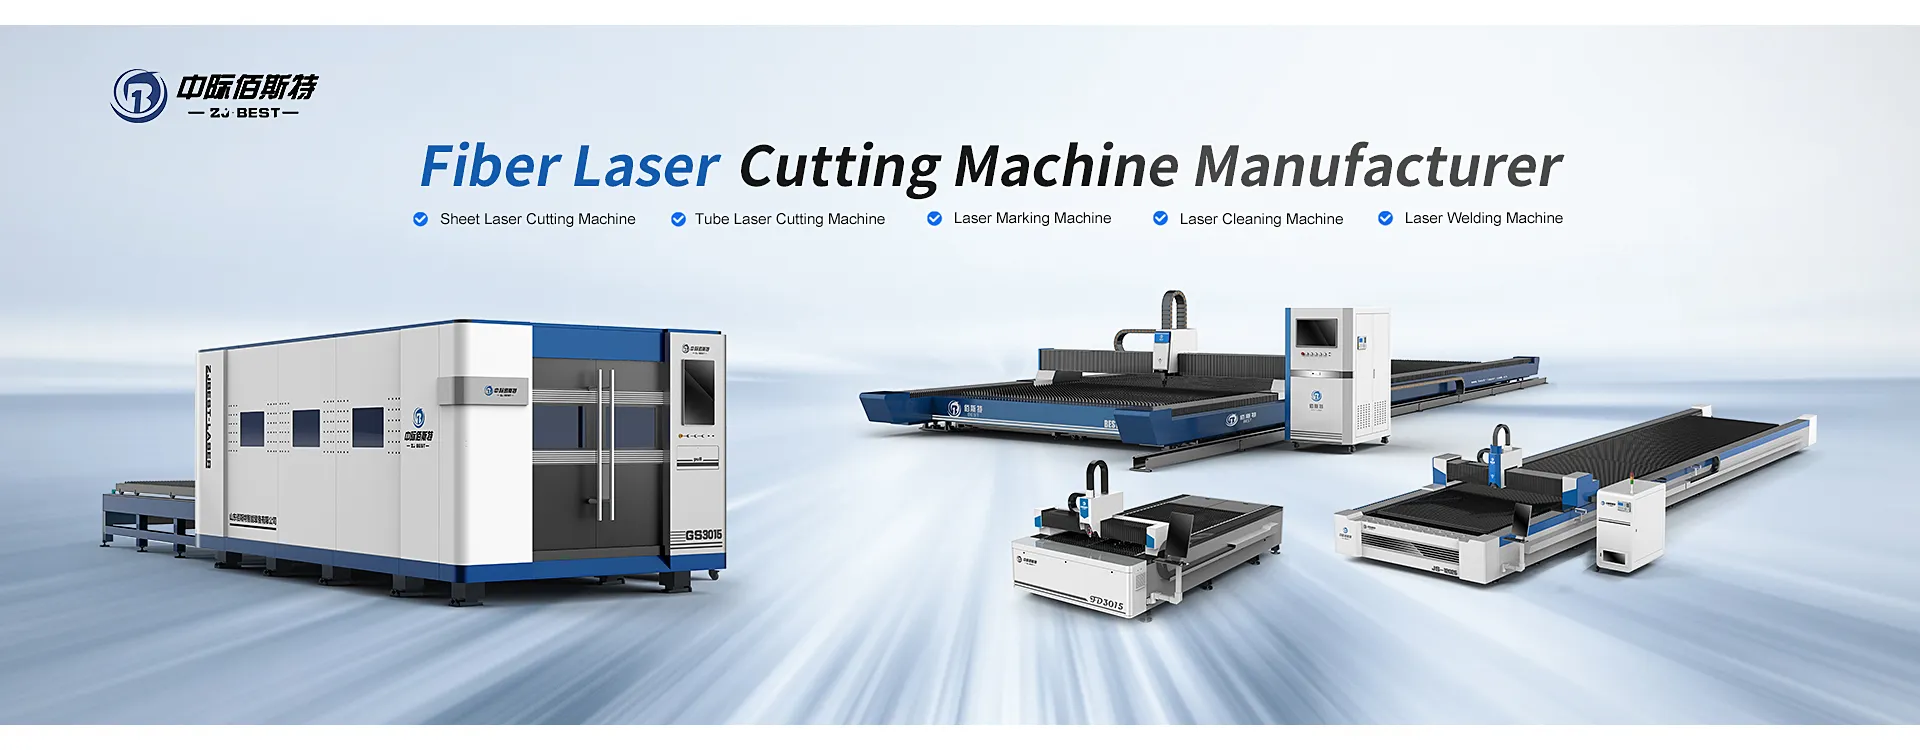 Fiber Laser Cutting Machine Manufacturer